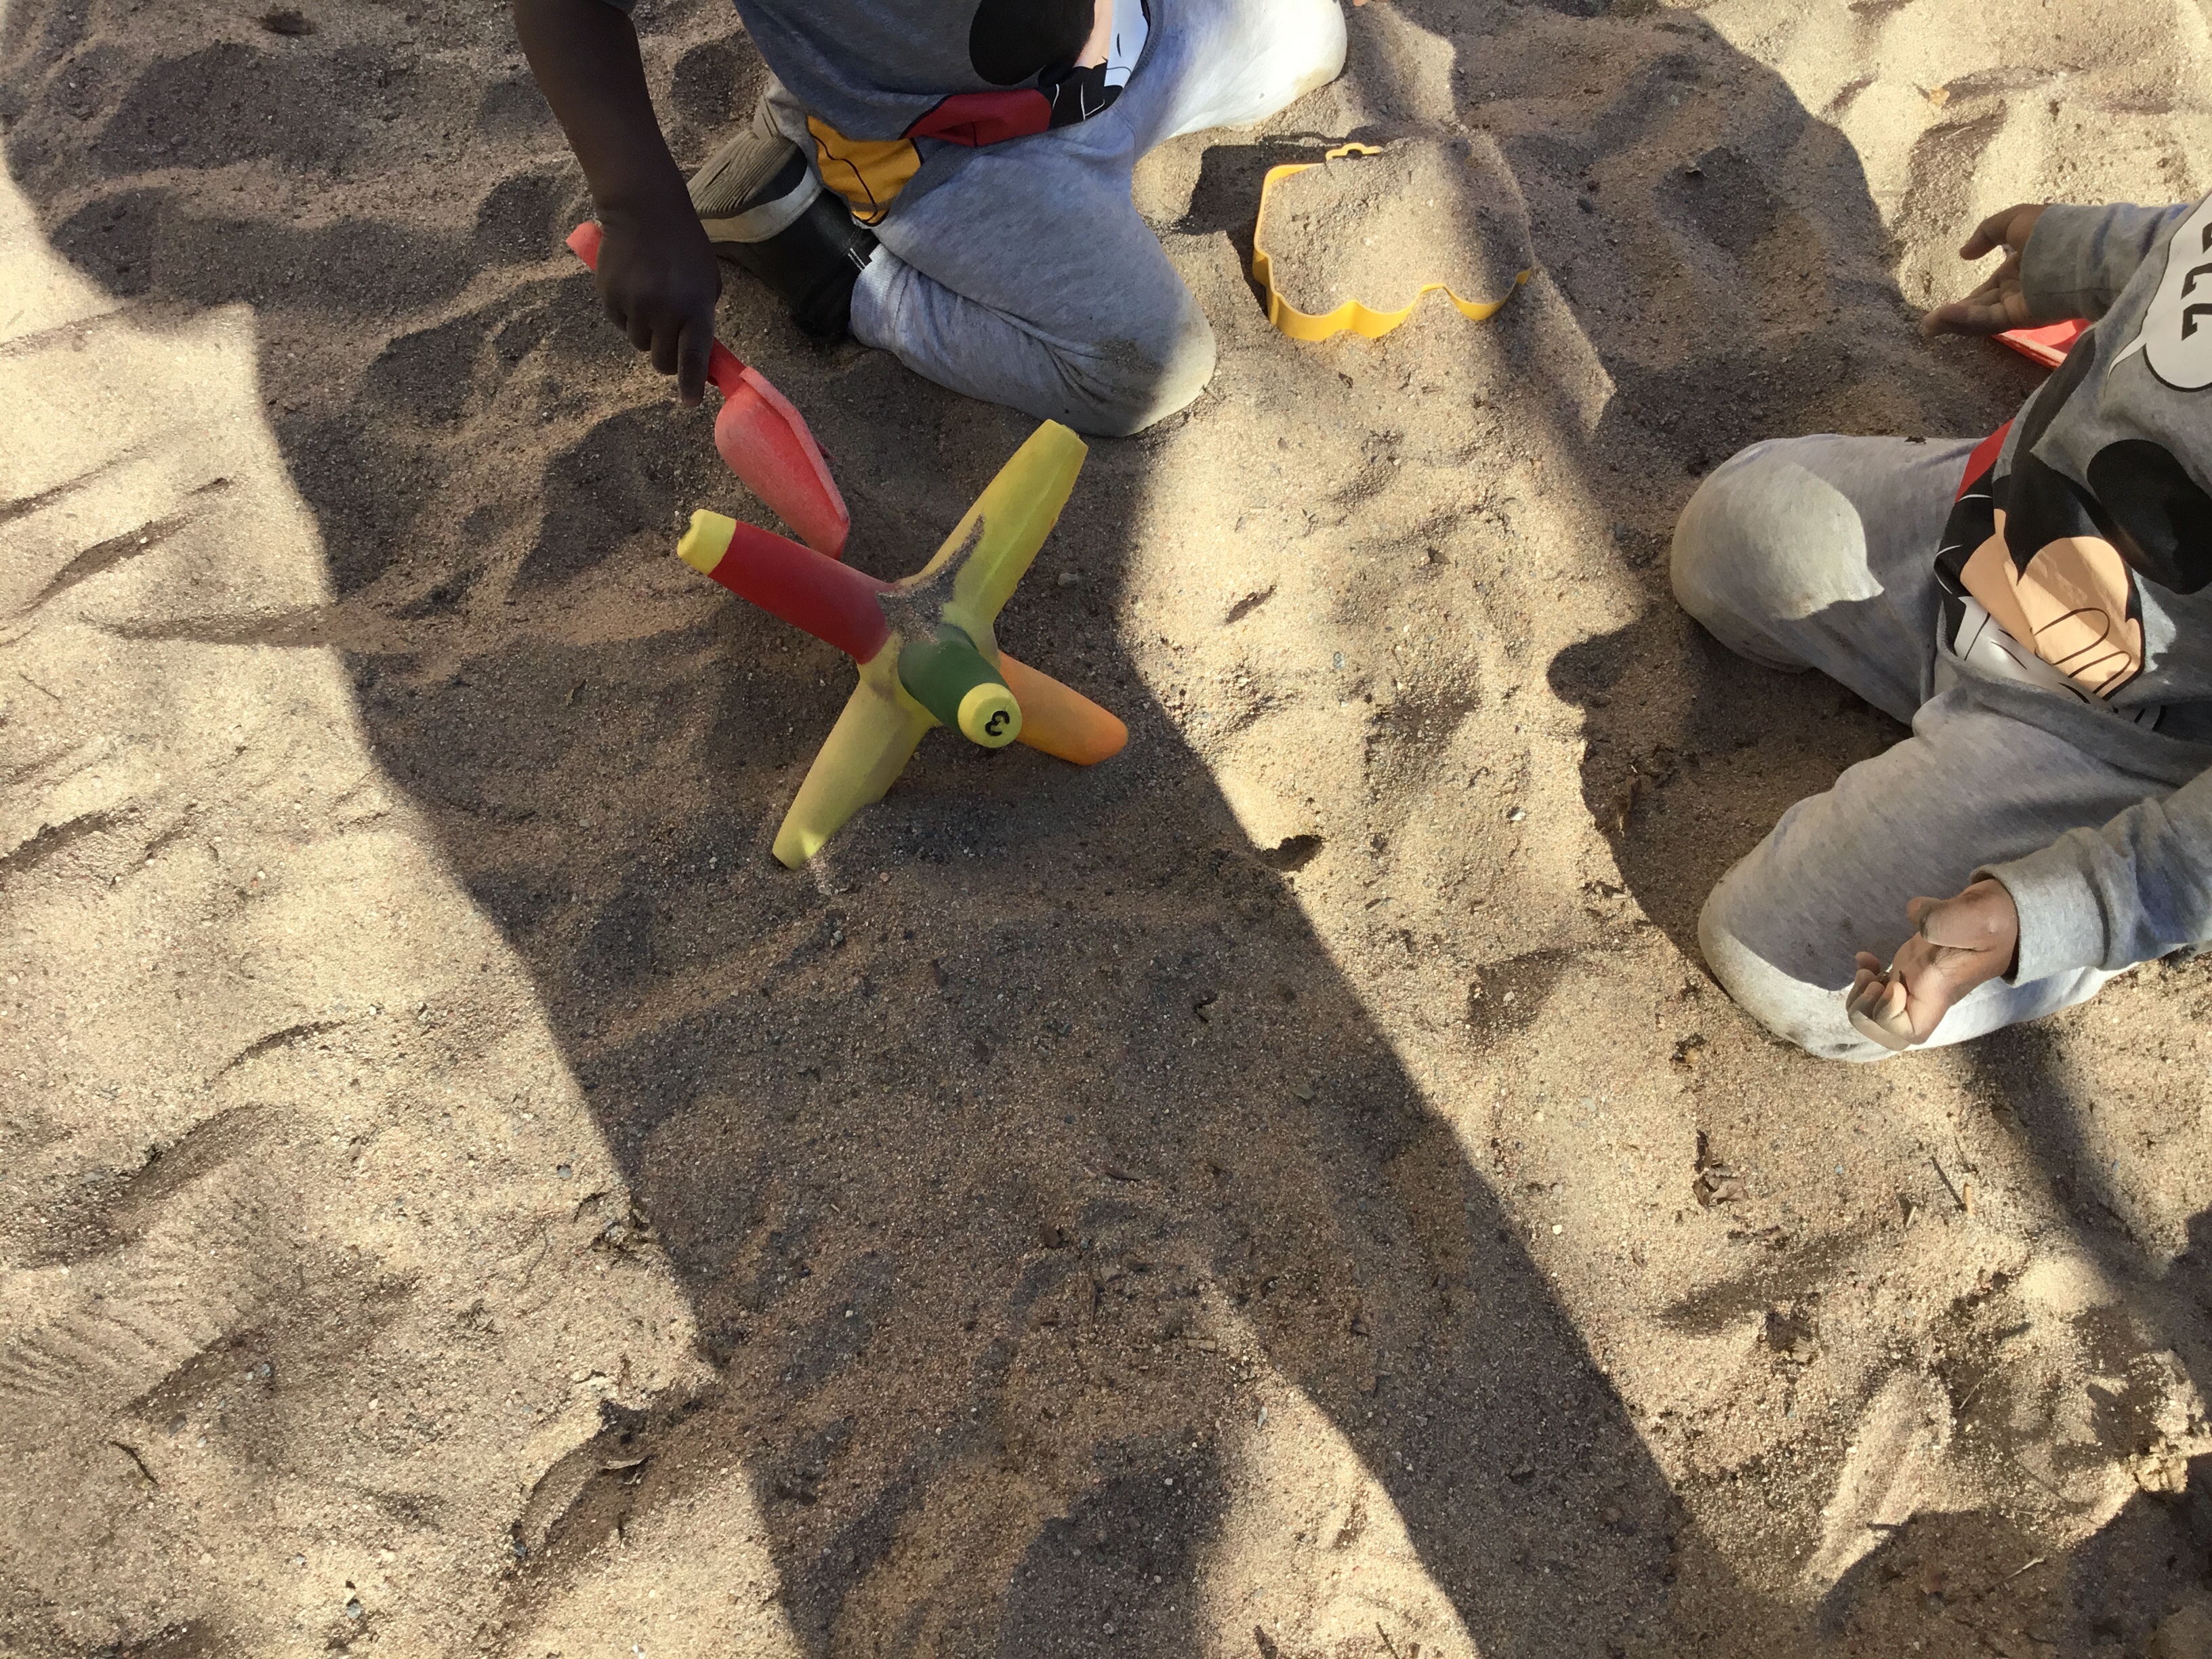 Barn leker i sandlådan